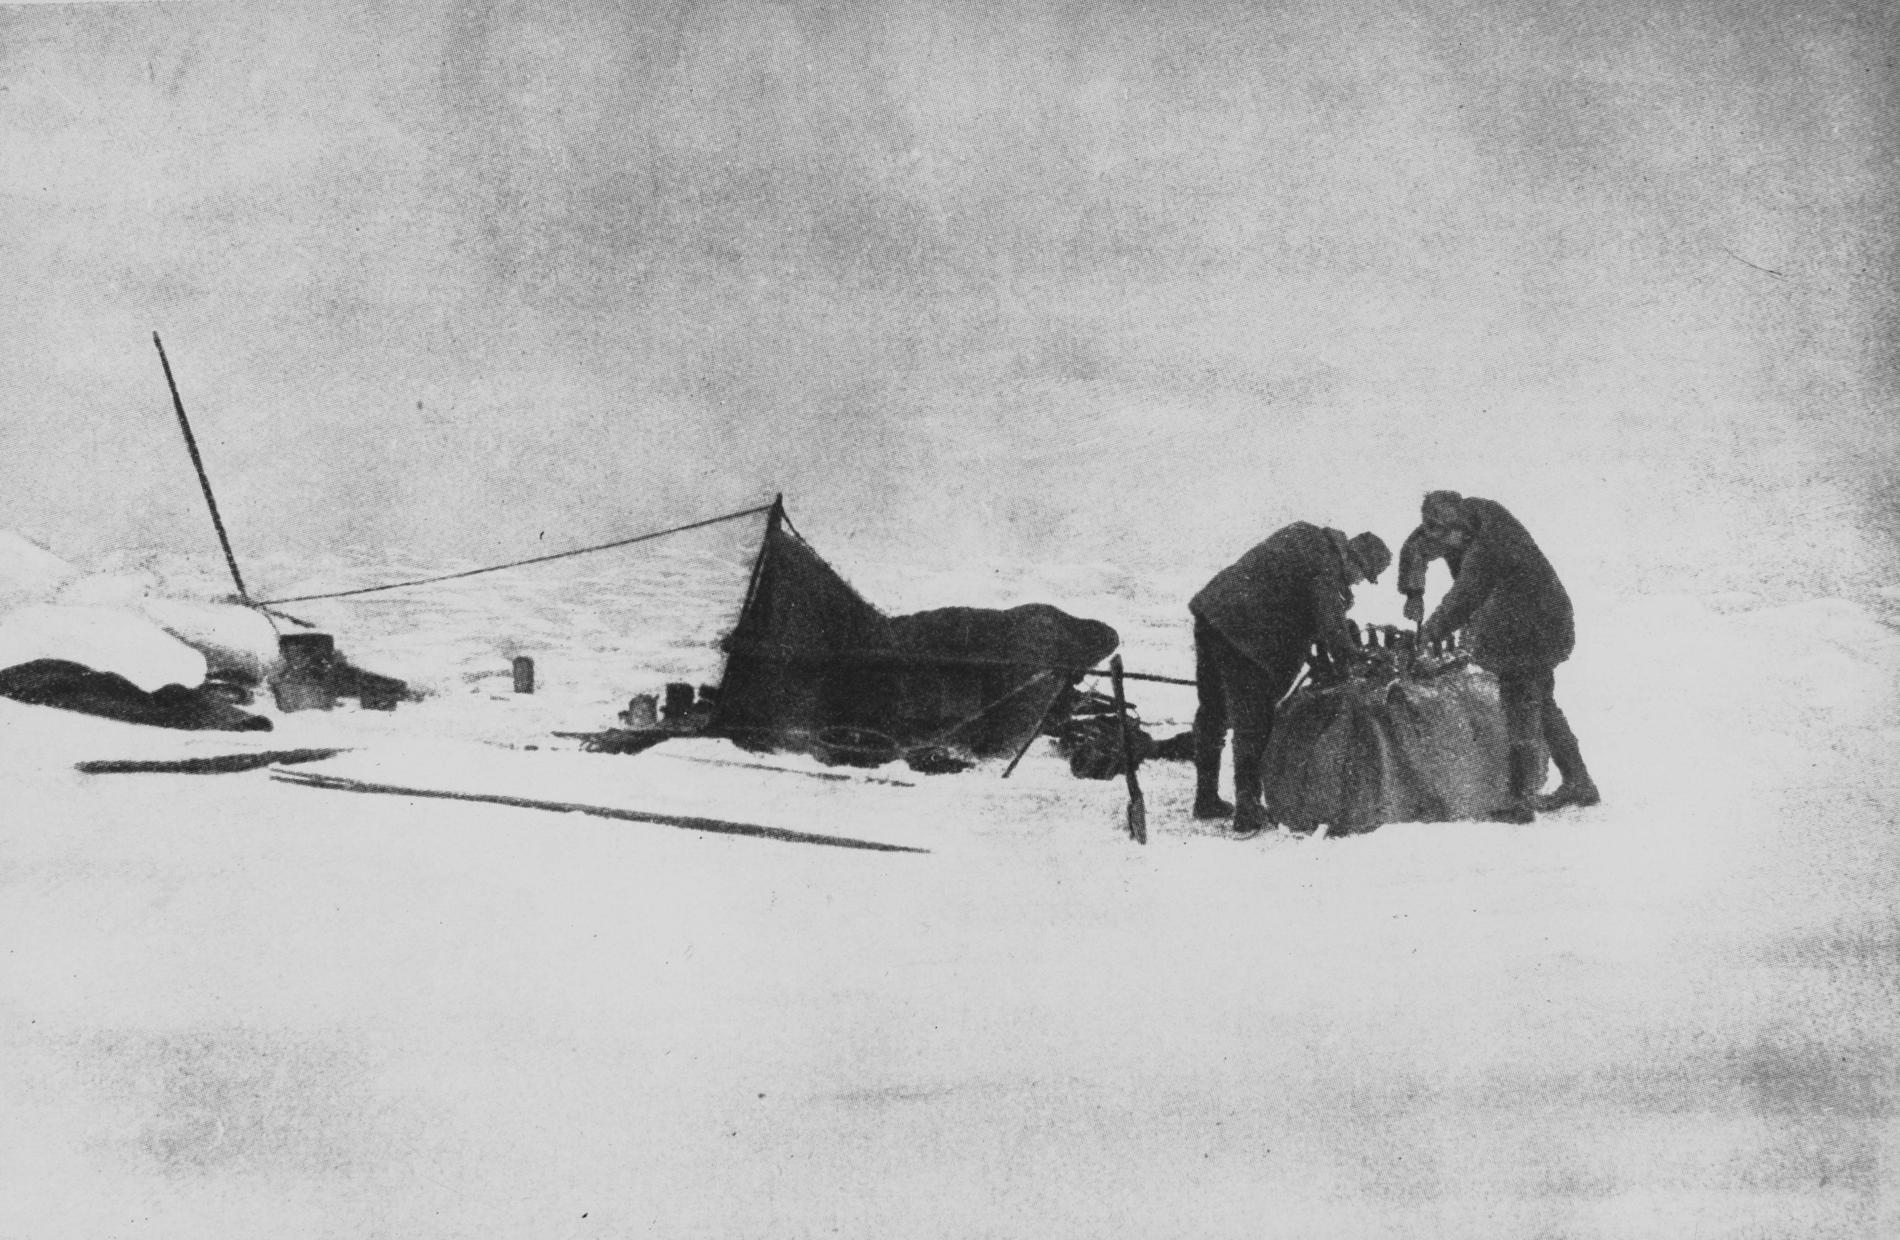 Vätgasballongen med namnet Örnen lyfte den 11 juni 1897 med Nordpolen som mål. Expeditionen misslyckades och upptäckarna Andrée, Frænkel och Strindberg omkom. Arkivbild.